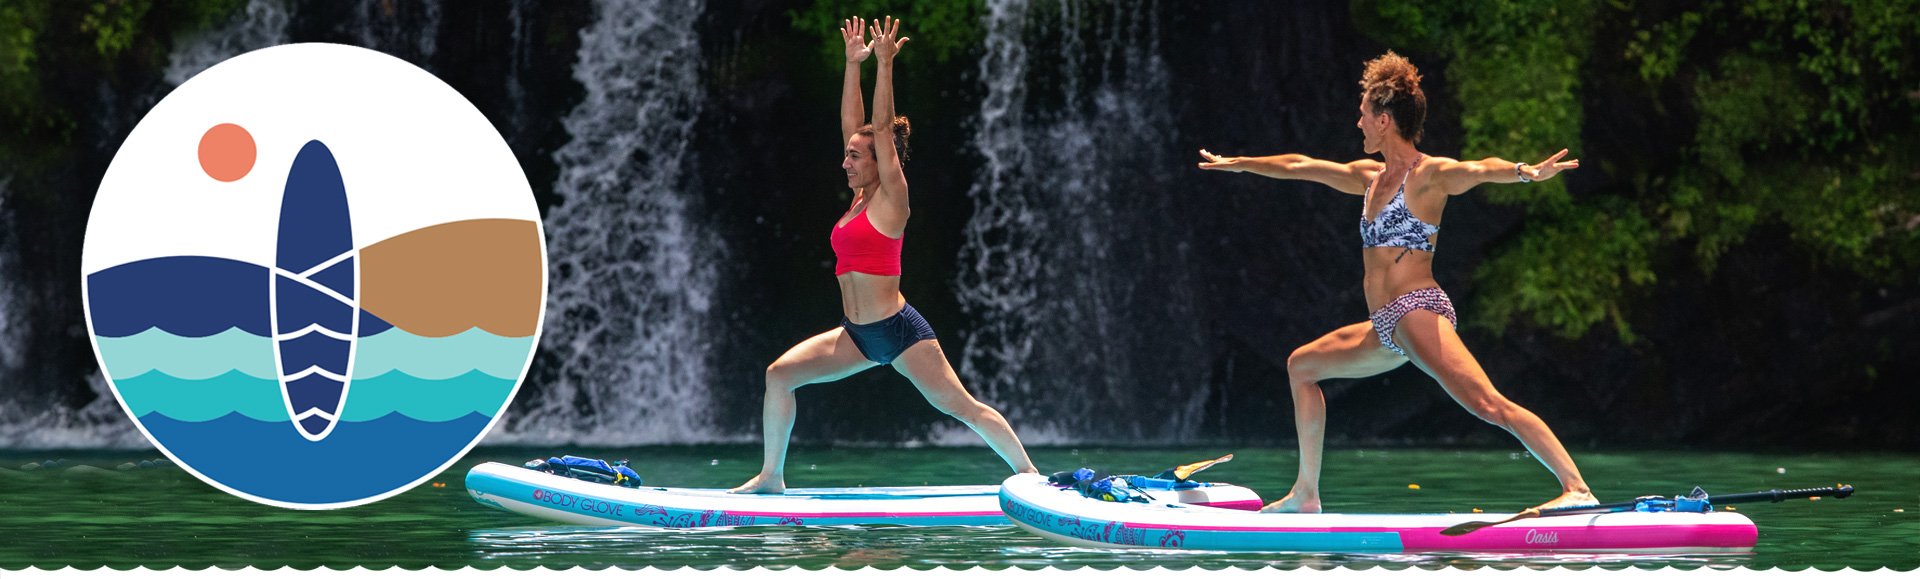 SUP Boards für Übungen auf dem Wasser – FITNESS BOARDS